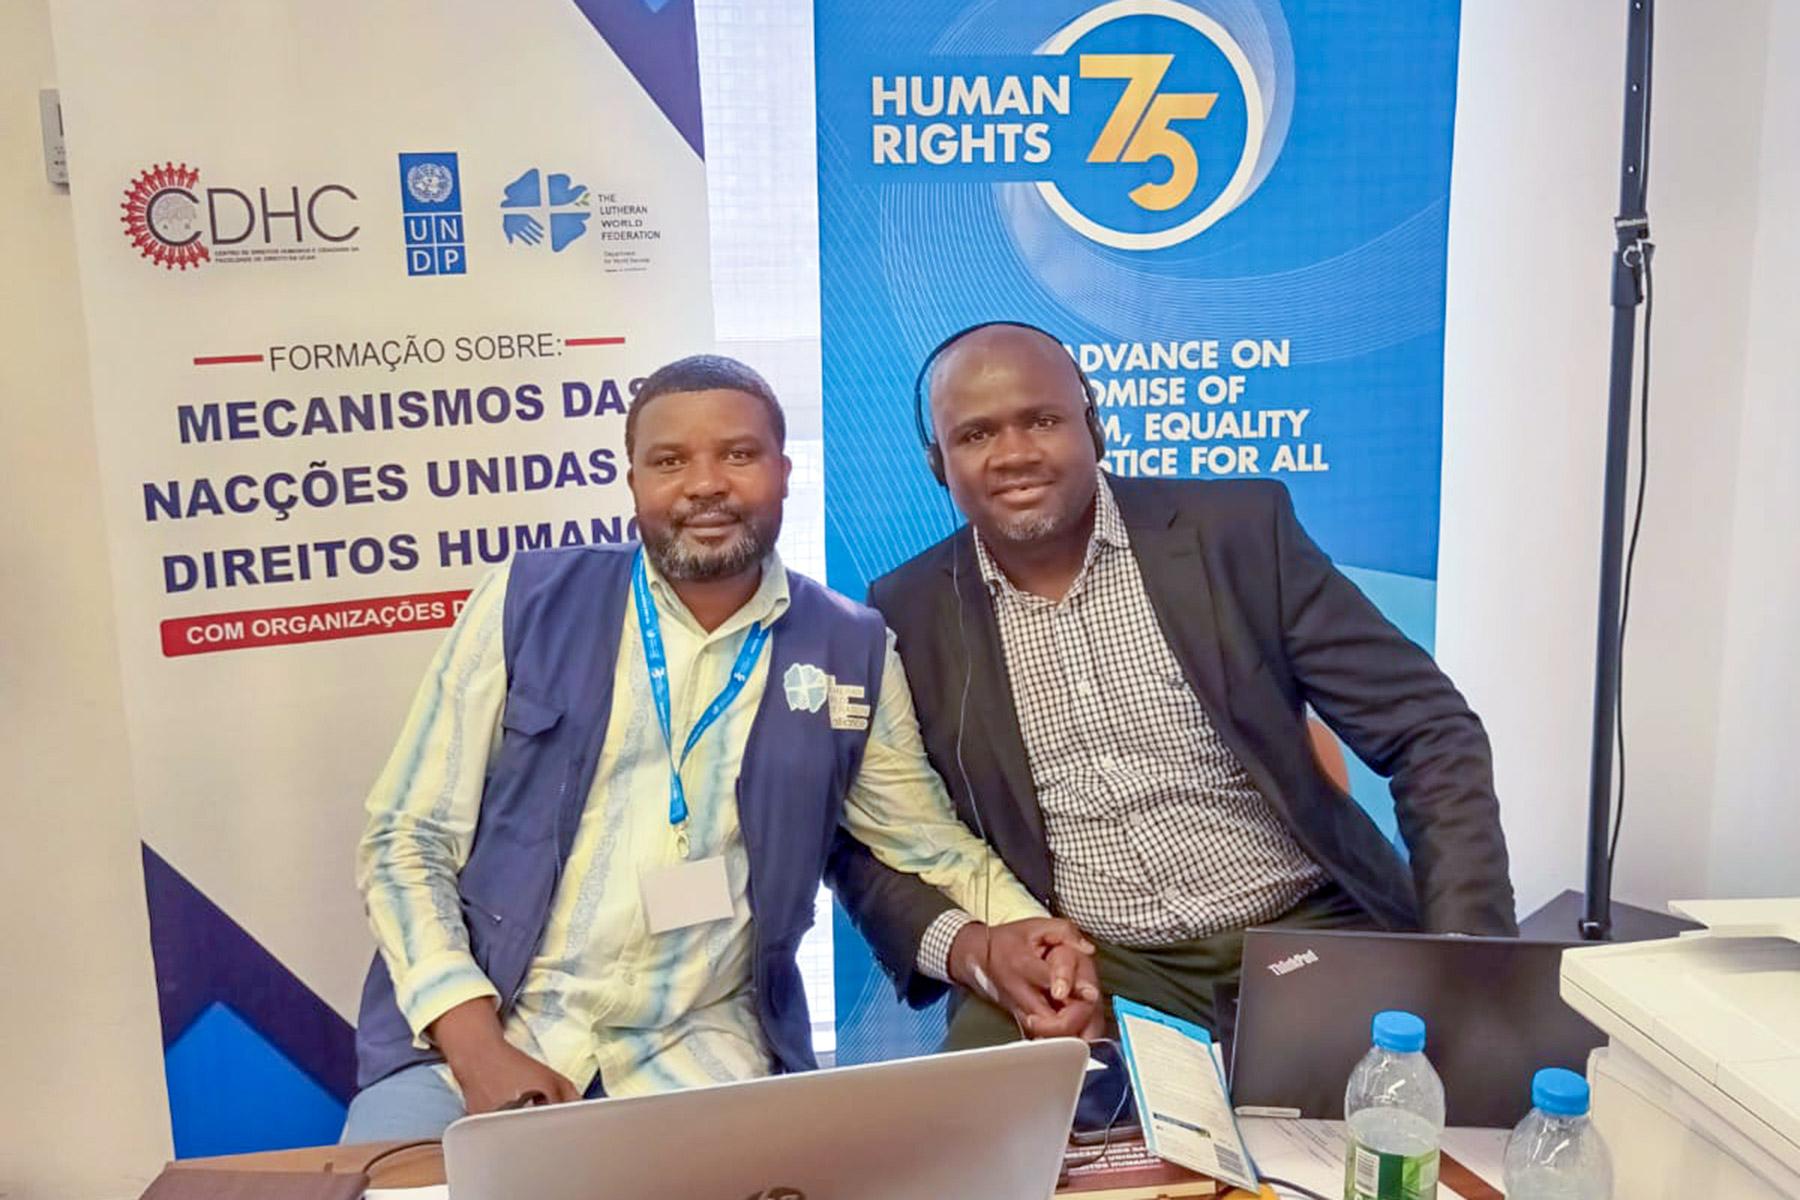 Angola human rights training